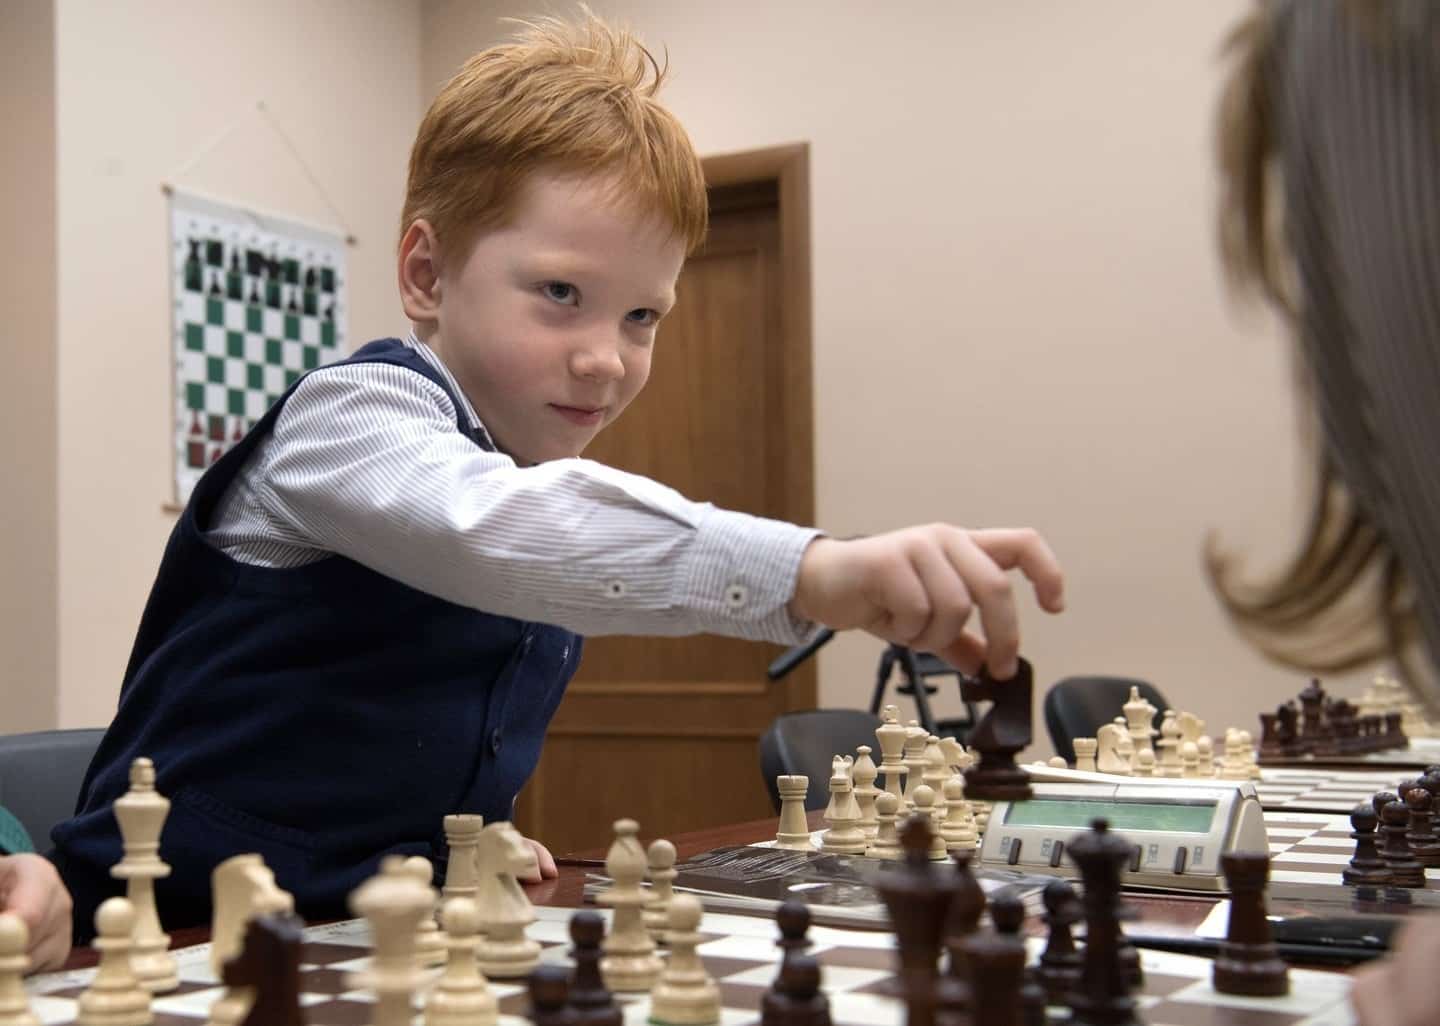 Новые уроки с 1 сентября 2019 года в школе: шахматы станут обязательными, изменения в школьной программе